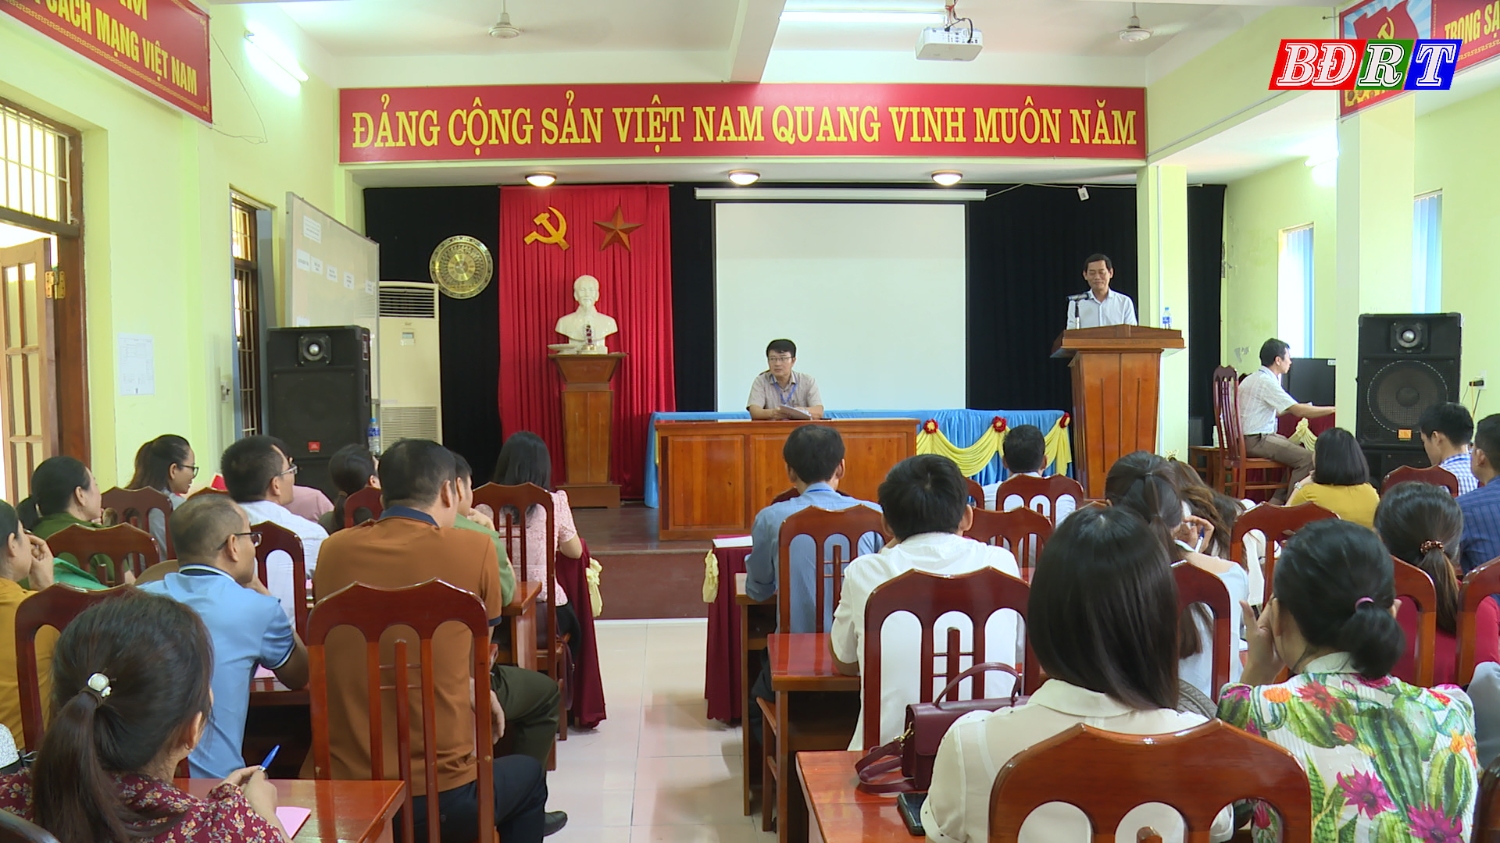 Đồng chí Nguyễn Văn Tình ThUV, Phó Chủ tịch UBND thị xã Ba Đồn đến thăm, kểm tra tại Hội đồng thi trường THPT Lương Thế Vinh